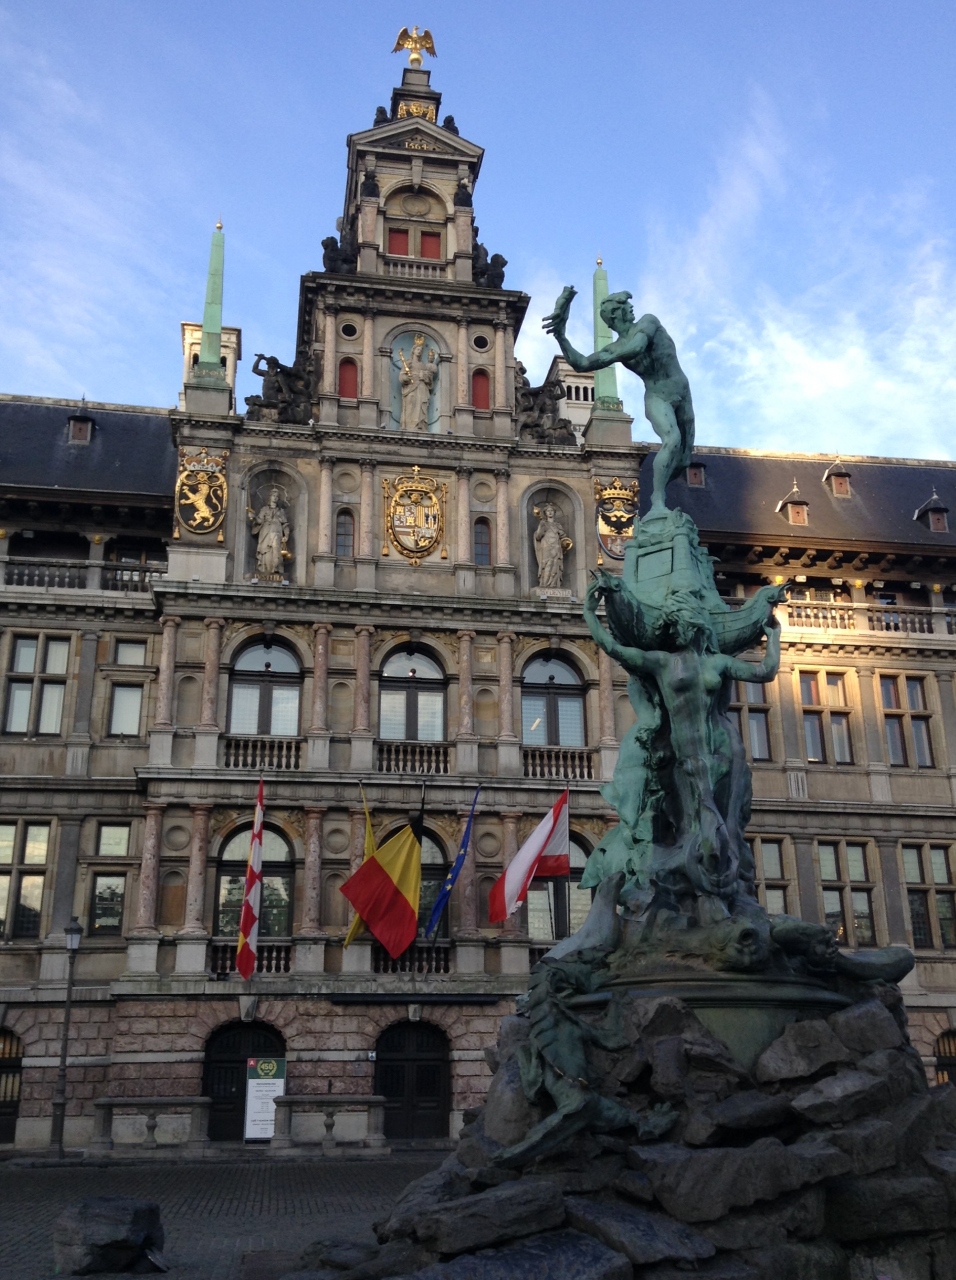 ベルギー オランダ旅行 アントワープ編 ネロが見たかったルーベンスの絵を鑑賞 印象的だったアントワープ伝説の像 アントワープ ベルギー の旅行記 ブログ By Orangeroom4mikaさん フォートラベル